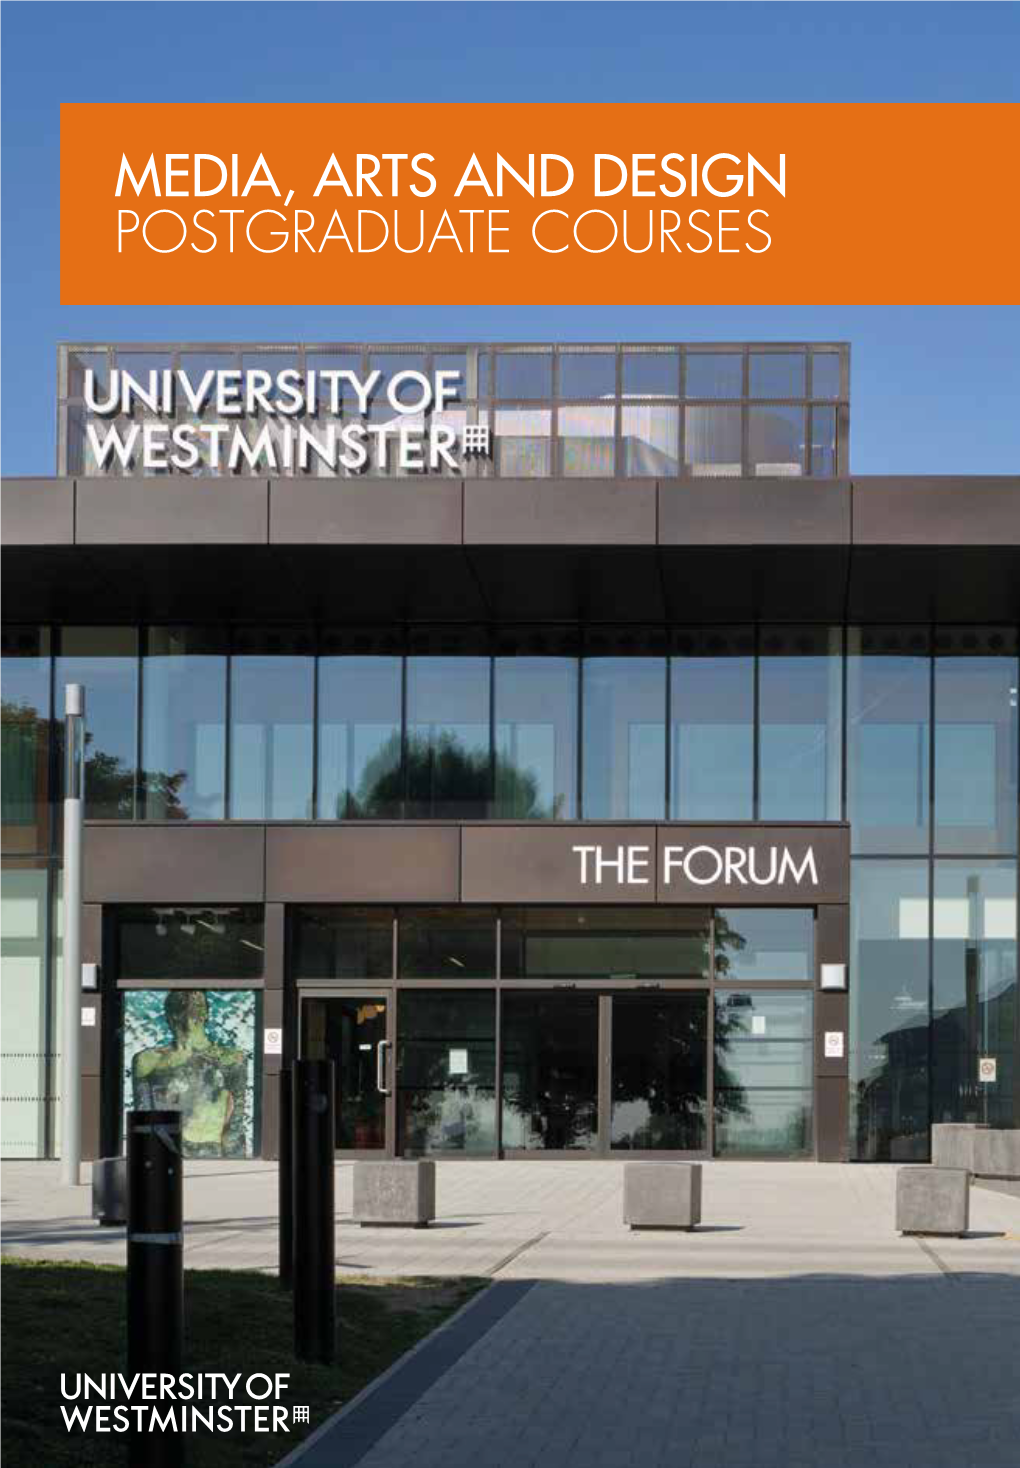 Media, Arts and Design Postgraduate Courses Contents